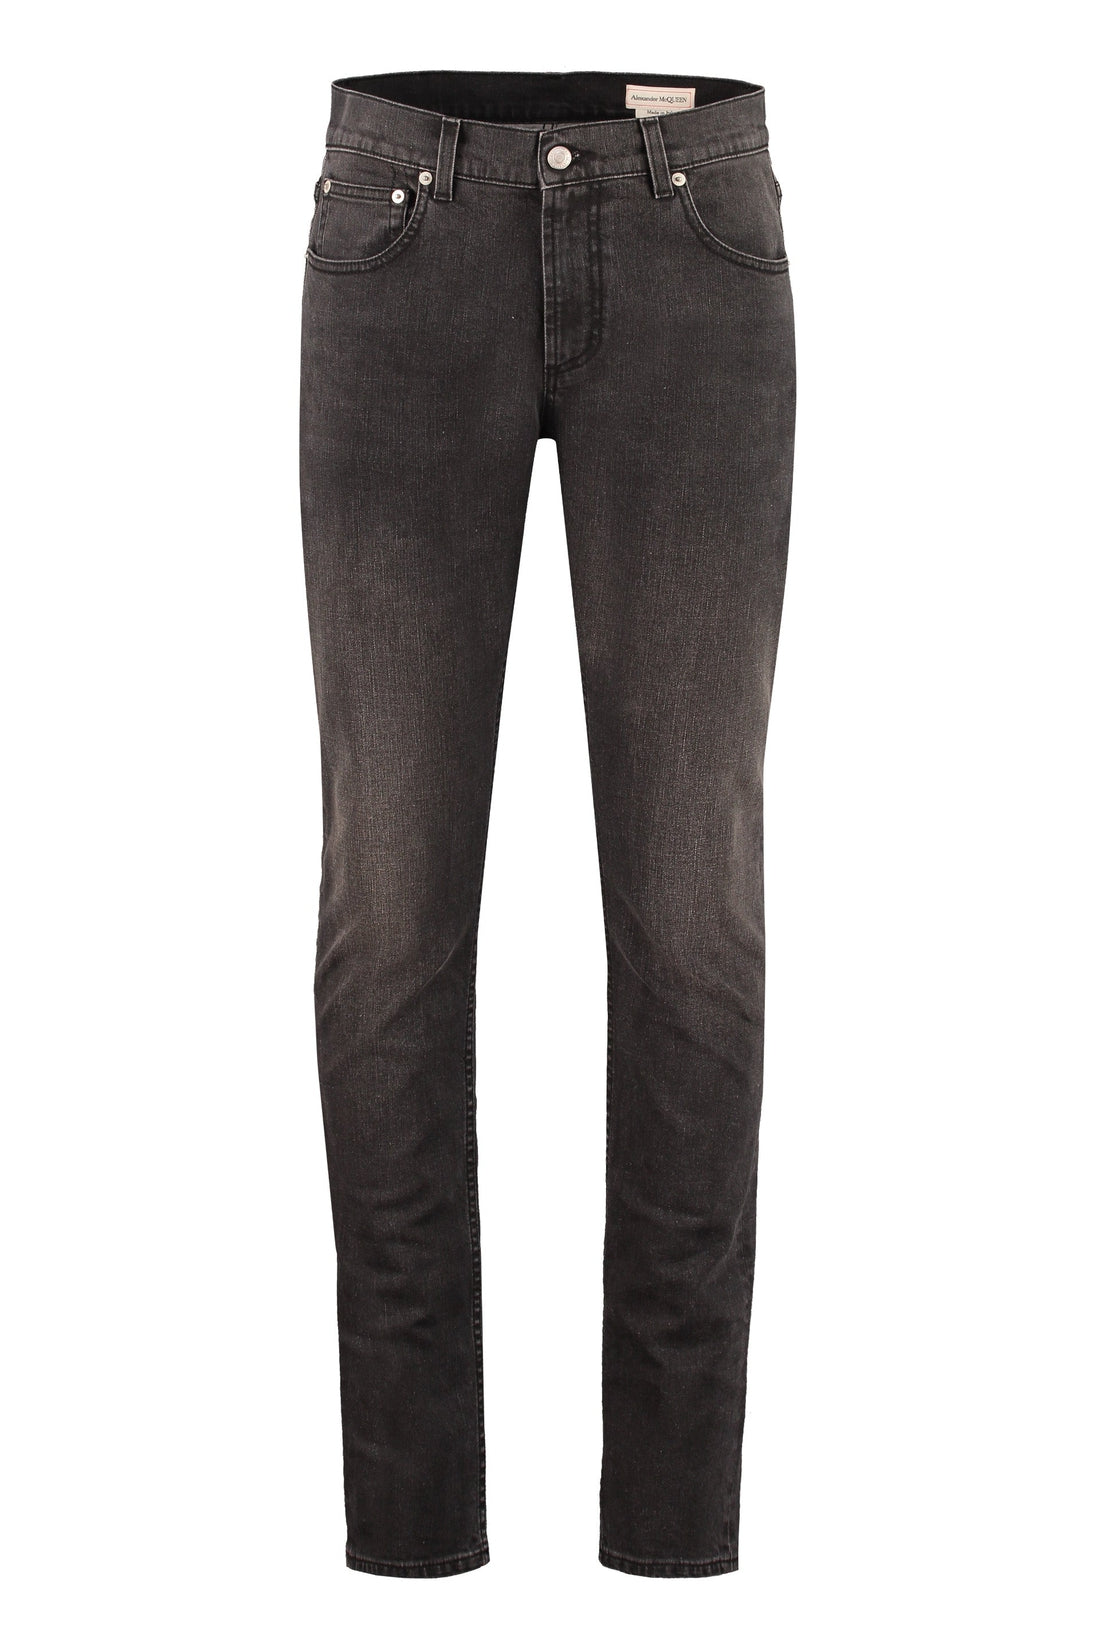 Alexander McQueen-OUTLET-SALE-Slim fit jeans-ARCHIVIST